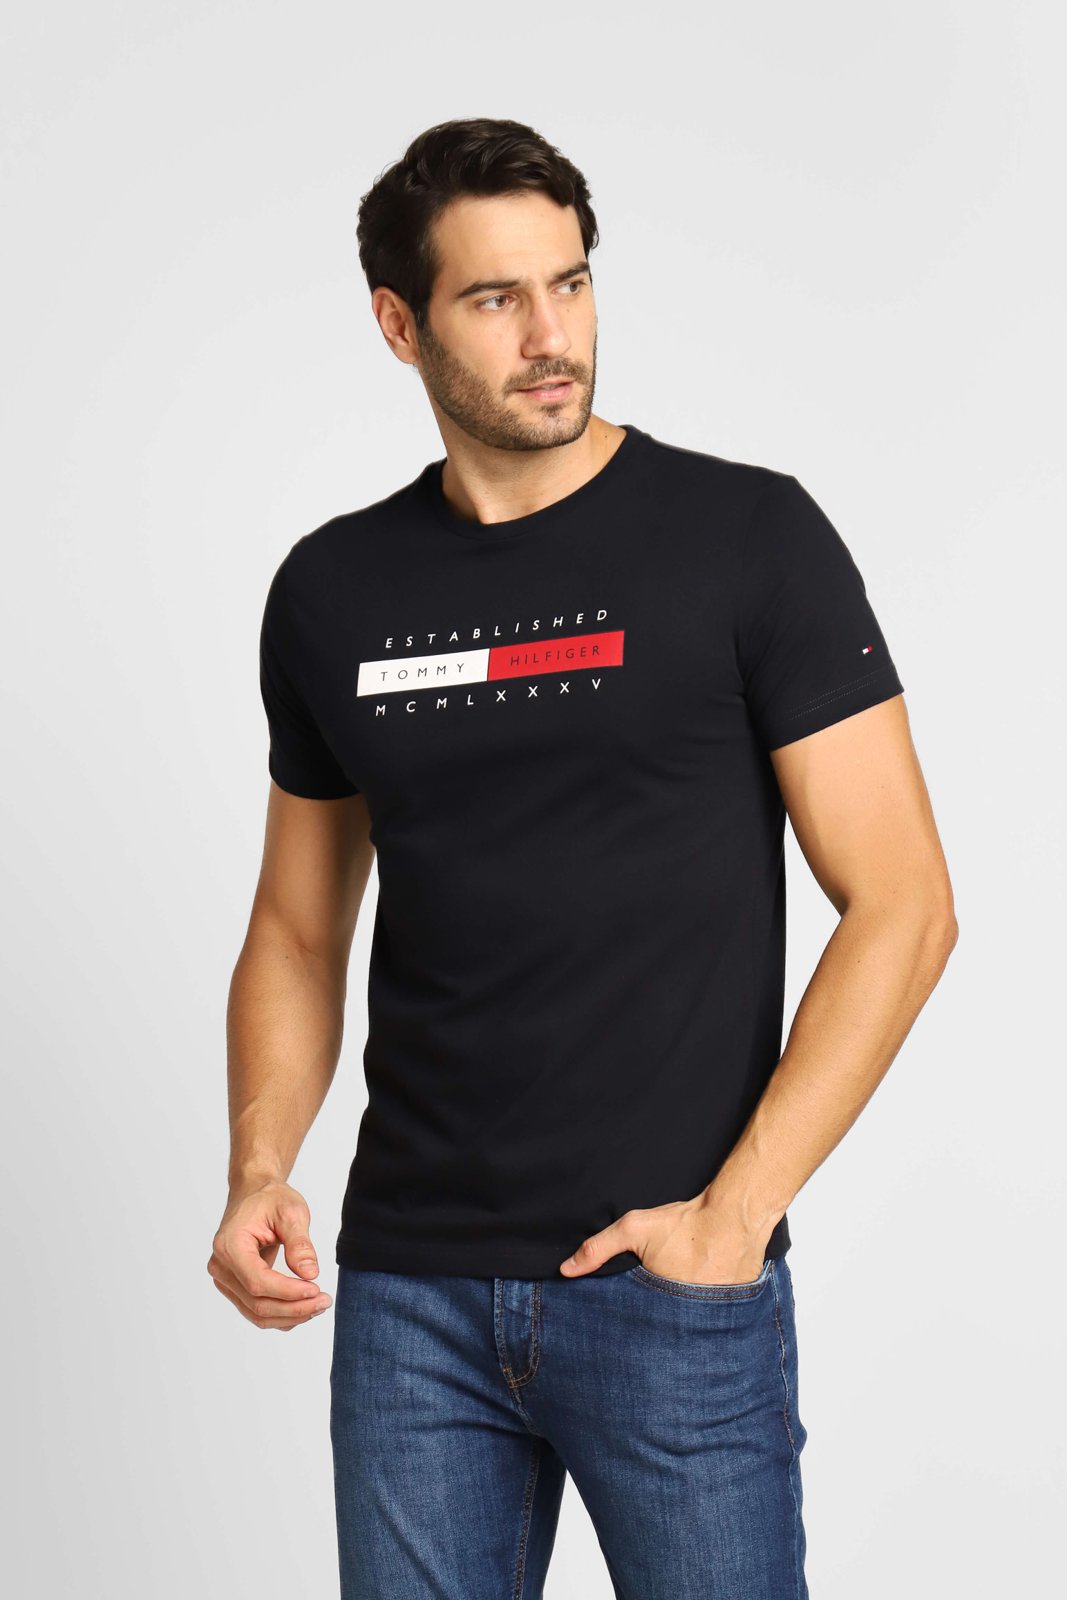 Camiseta Tommy Hilfiger Bordado - Oficial Mens Store  A melhor loja  masculina de roupas e calçados importados do Brasil